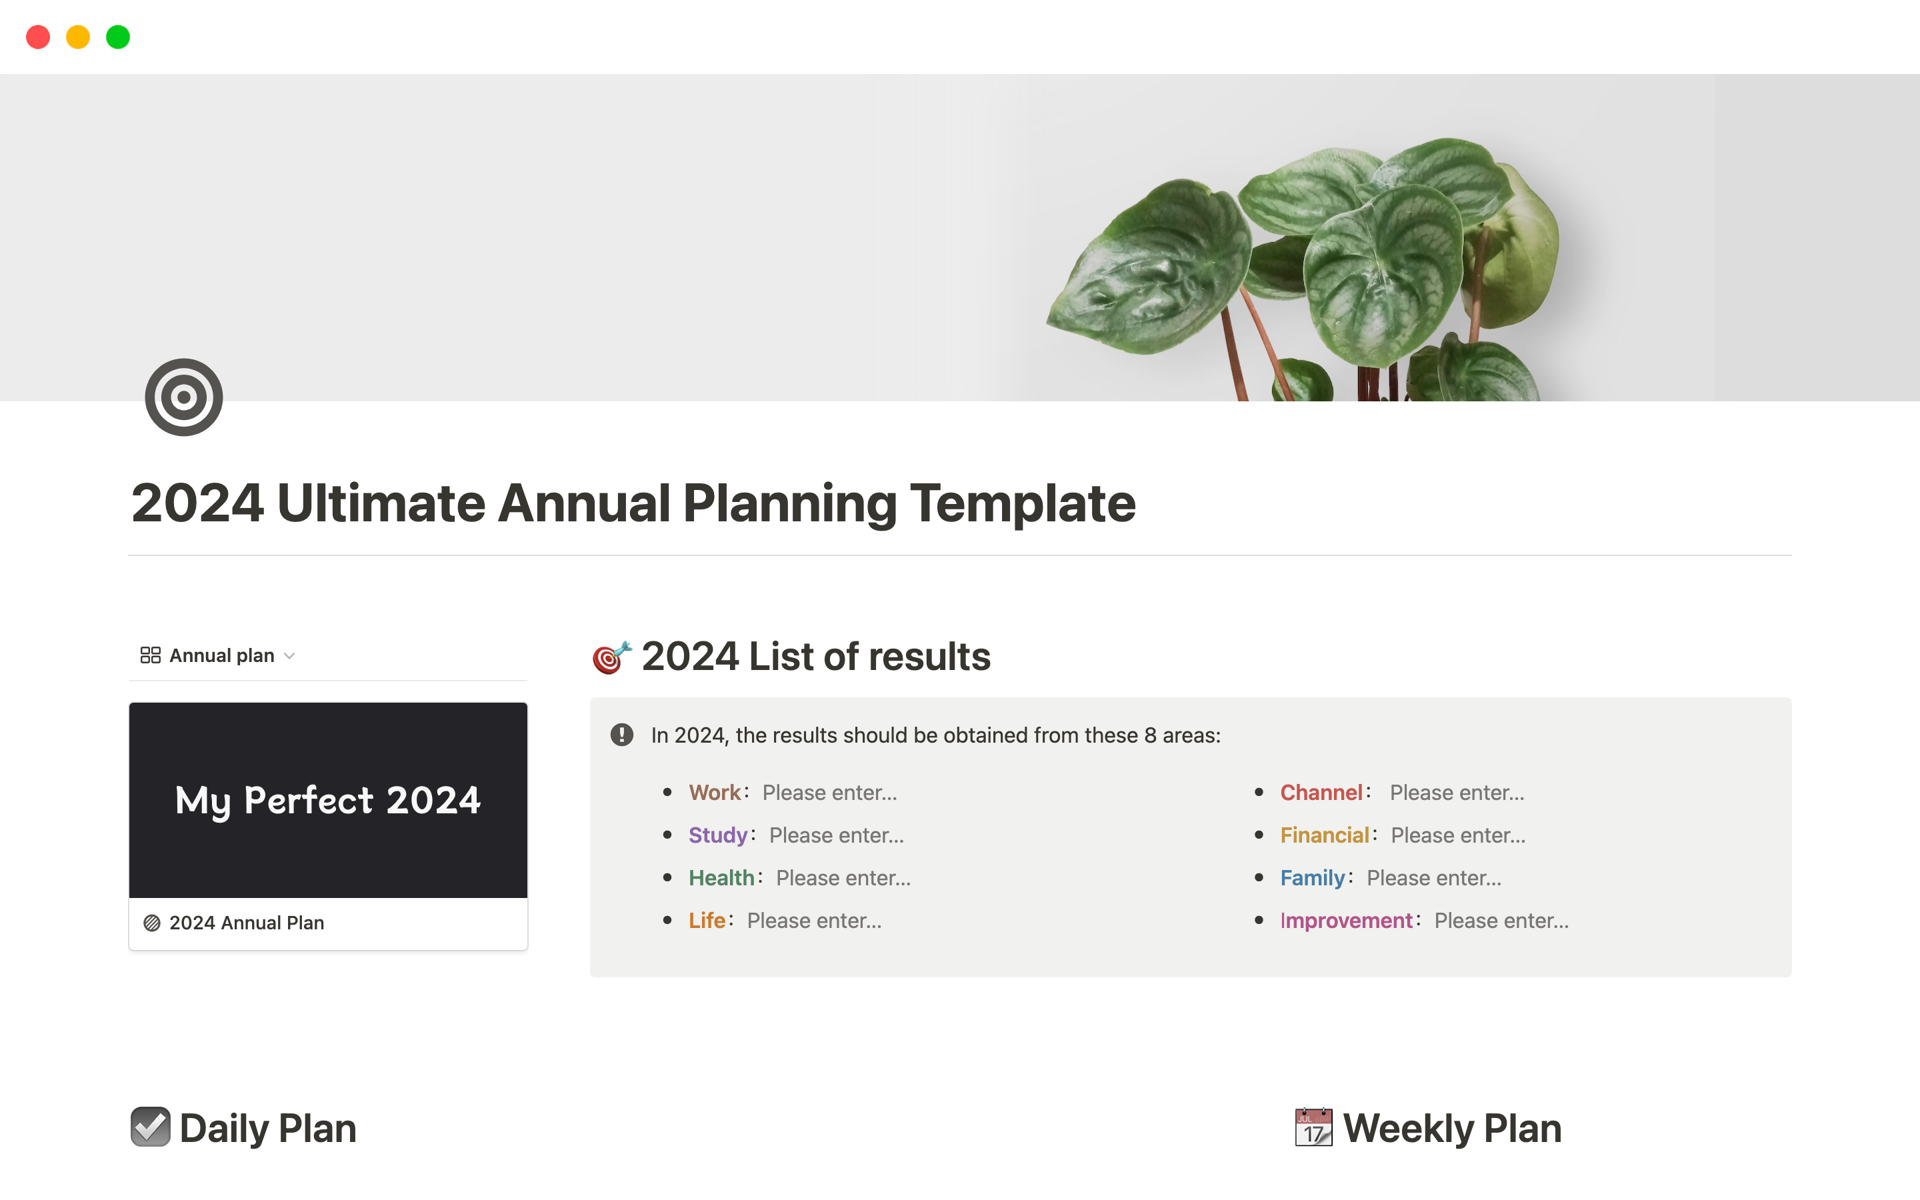 Aperçu du modèle de 2024 Ultimate Annual Planning